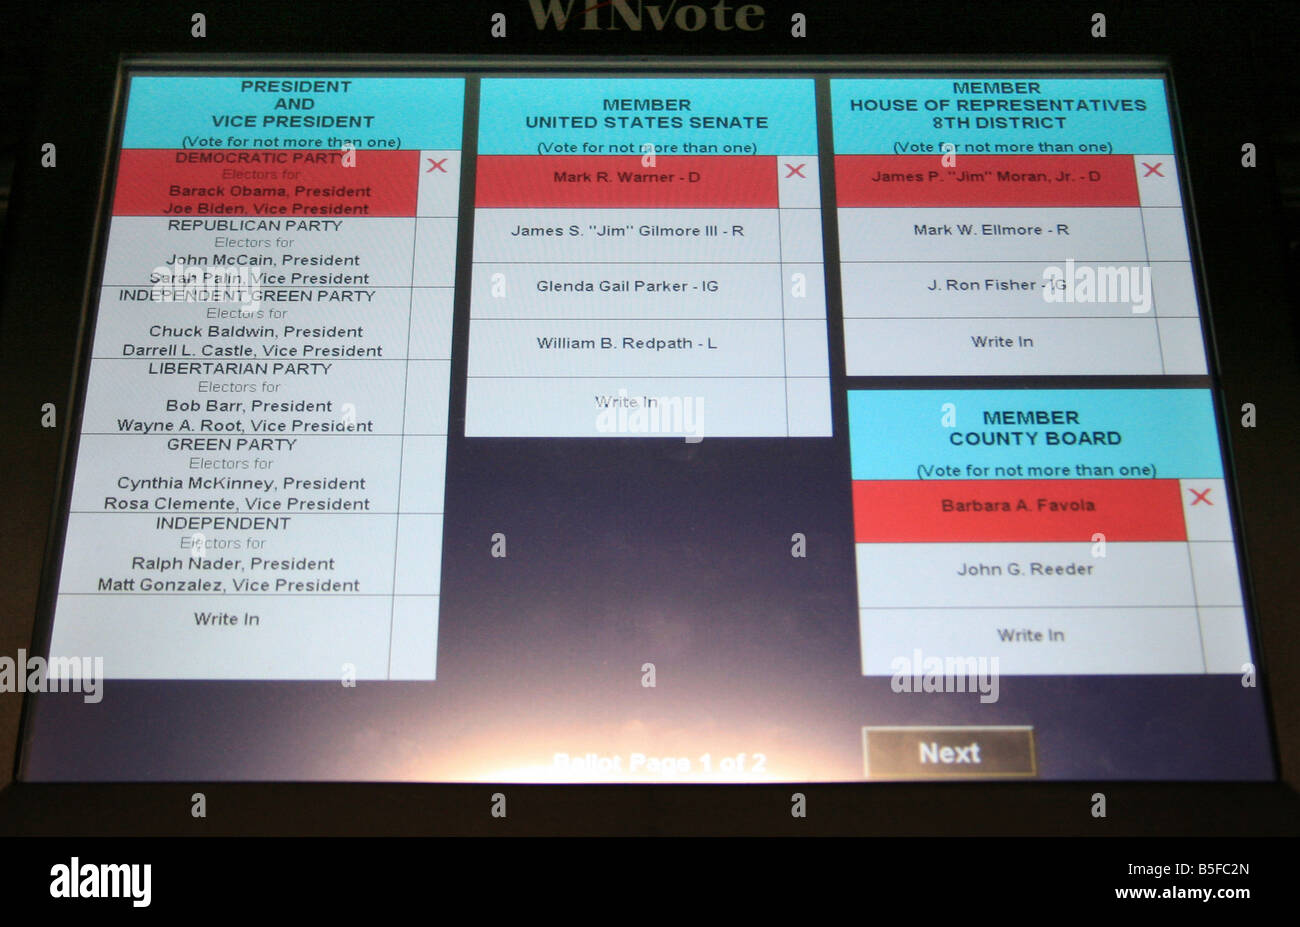 USA l'élection présidentielle de 2008 machine électronique lors de Arlington, Virginia, USA - montrant le nom de Barack Obama et Joe Biden. Banque D'Images